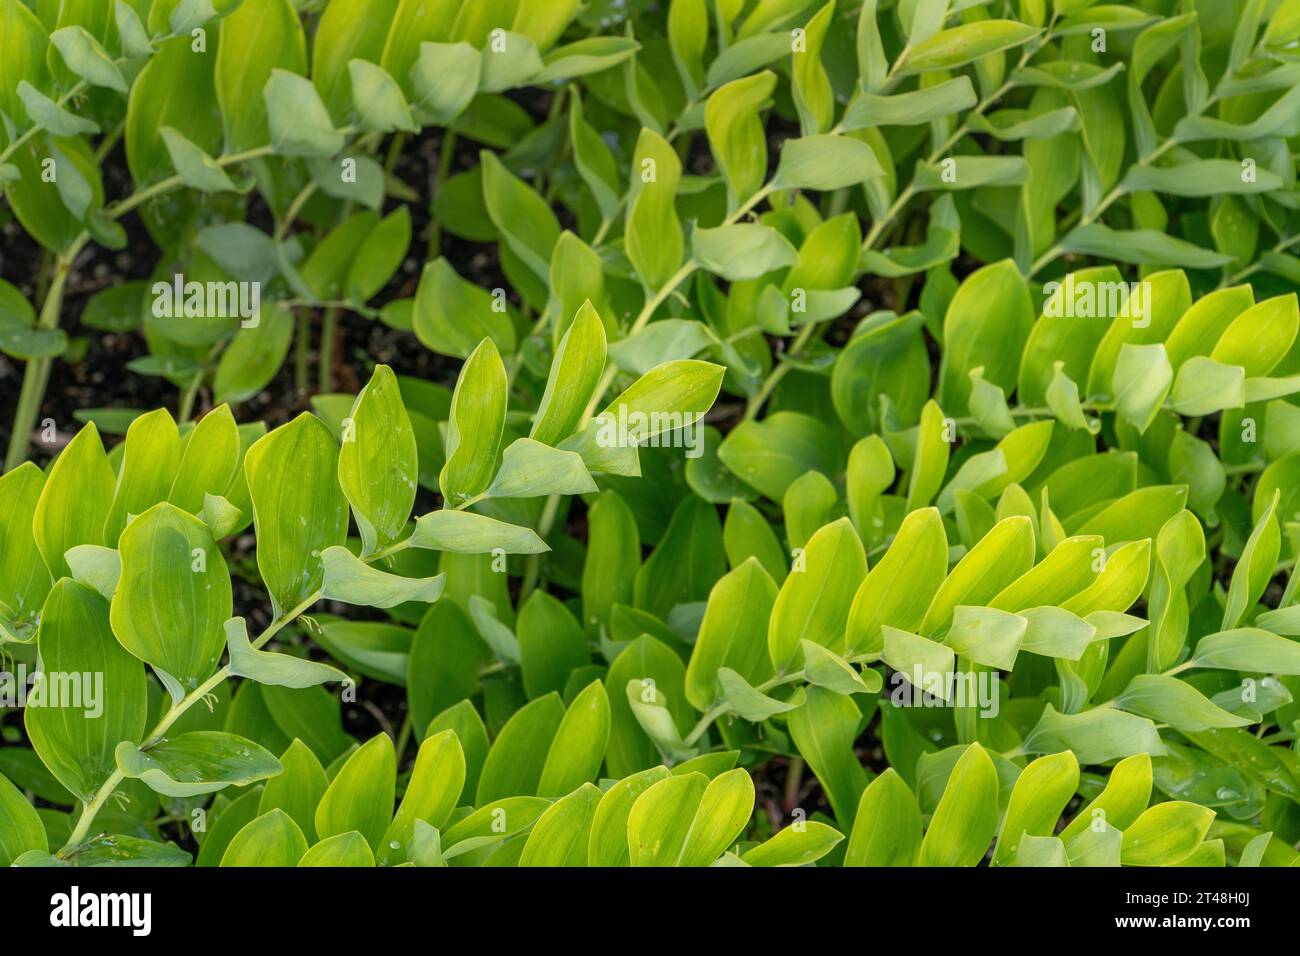 È Polygonatum odoratum, noto anche come sigillo di Salomone, una graziosa pianta perenne con steli ad arco. Prospera in giardini ombreggiati e aggiunge eleganza Foto Stock